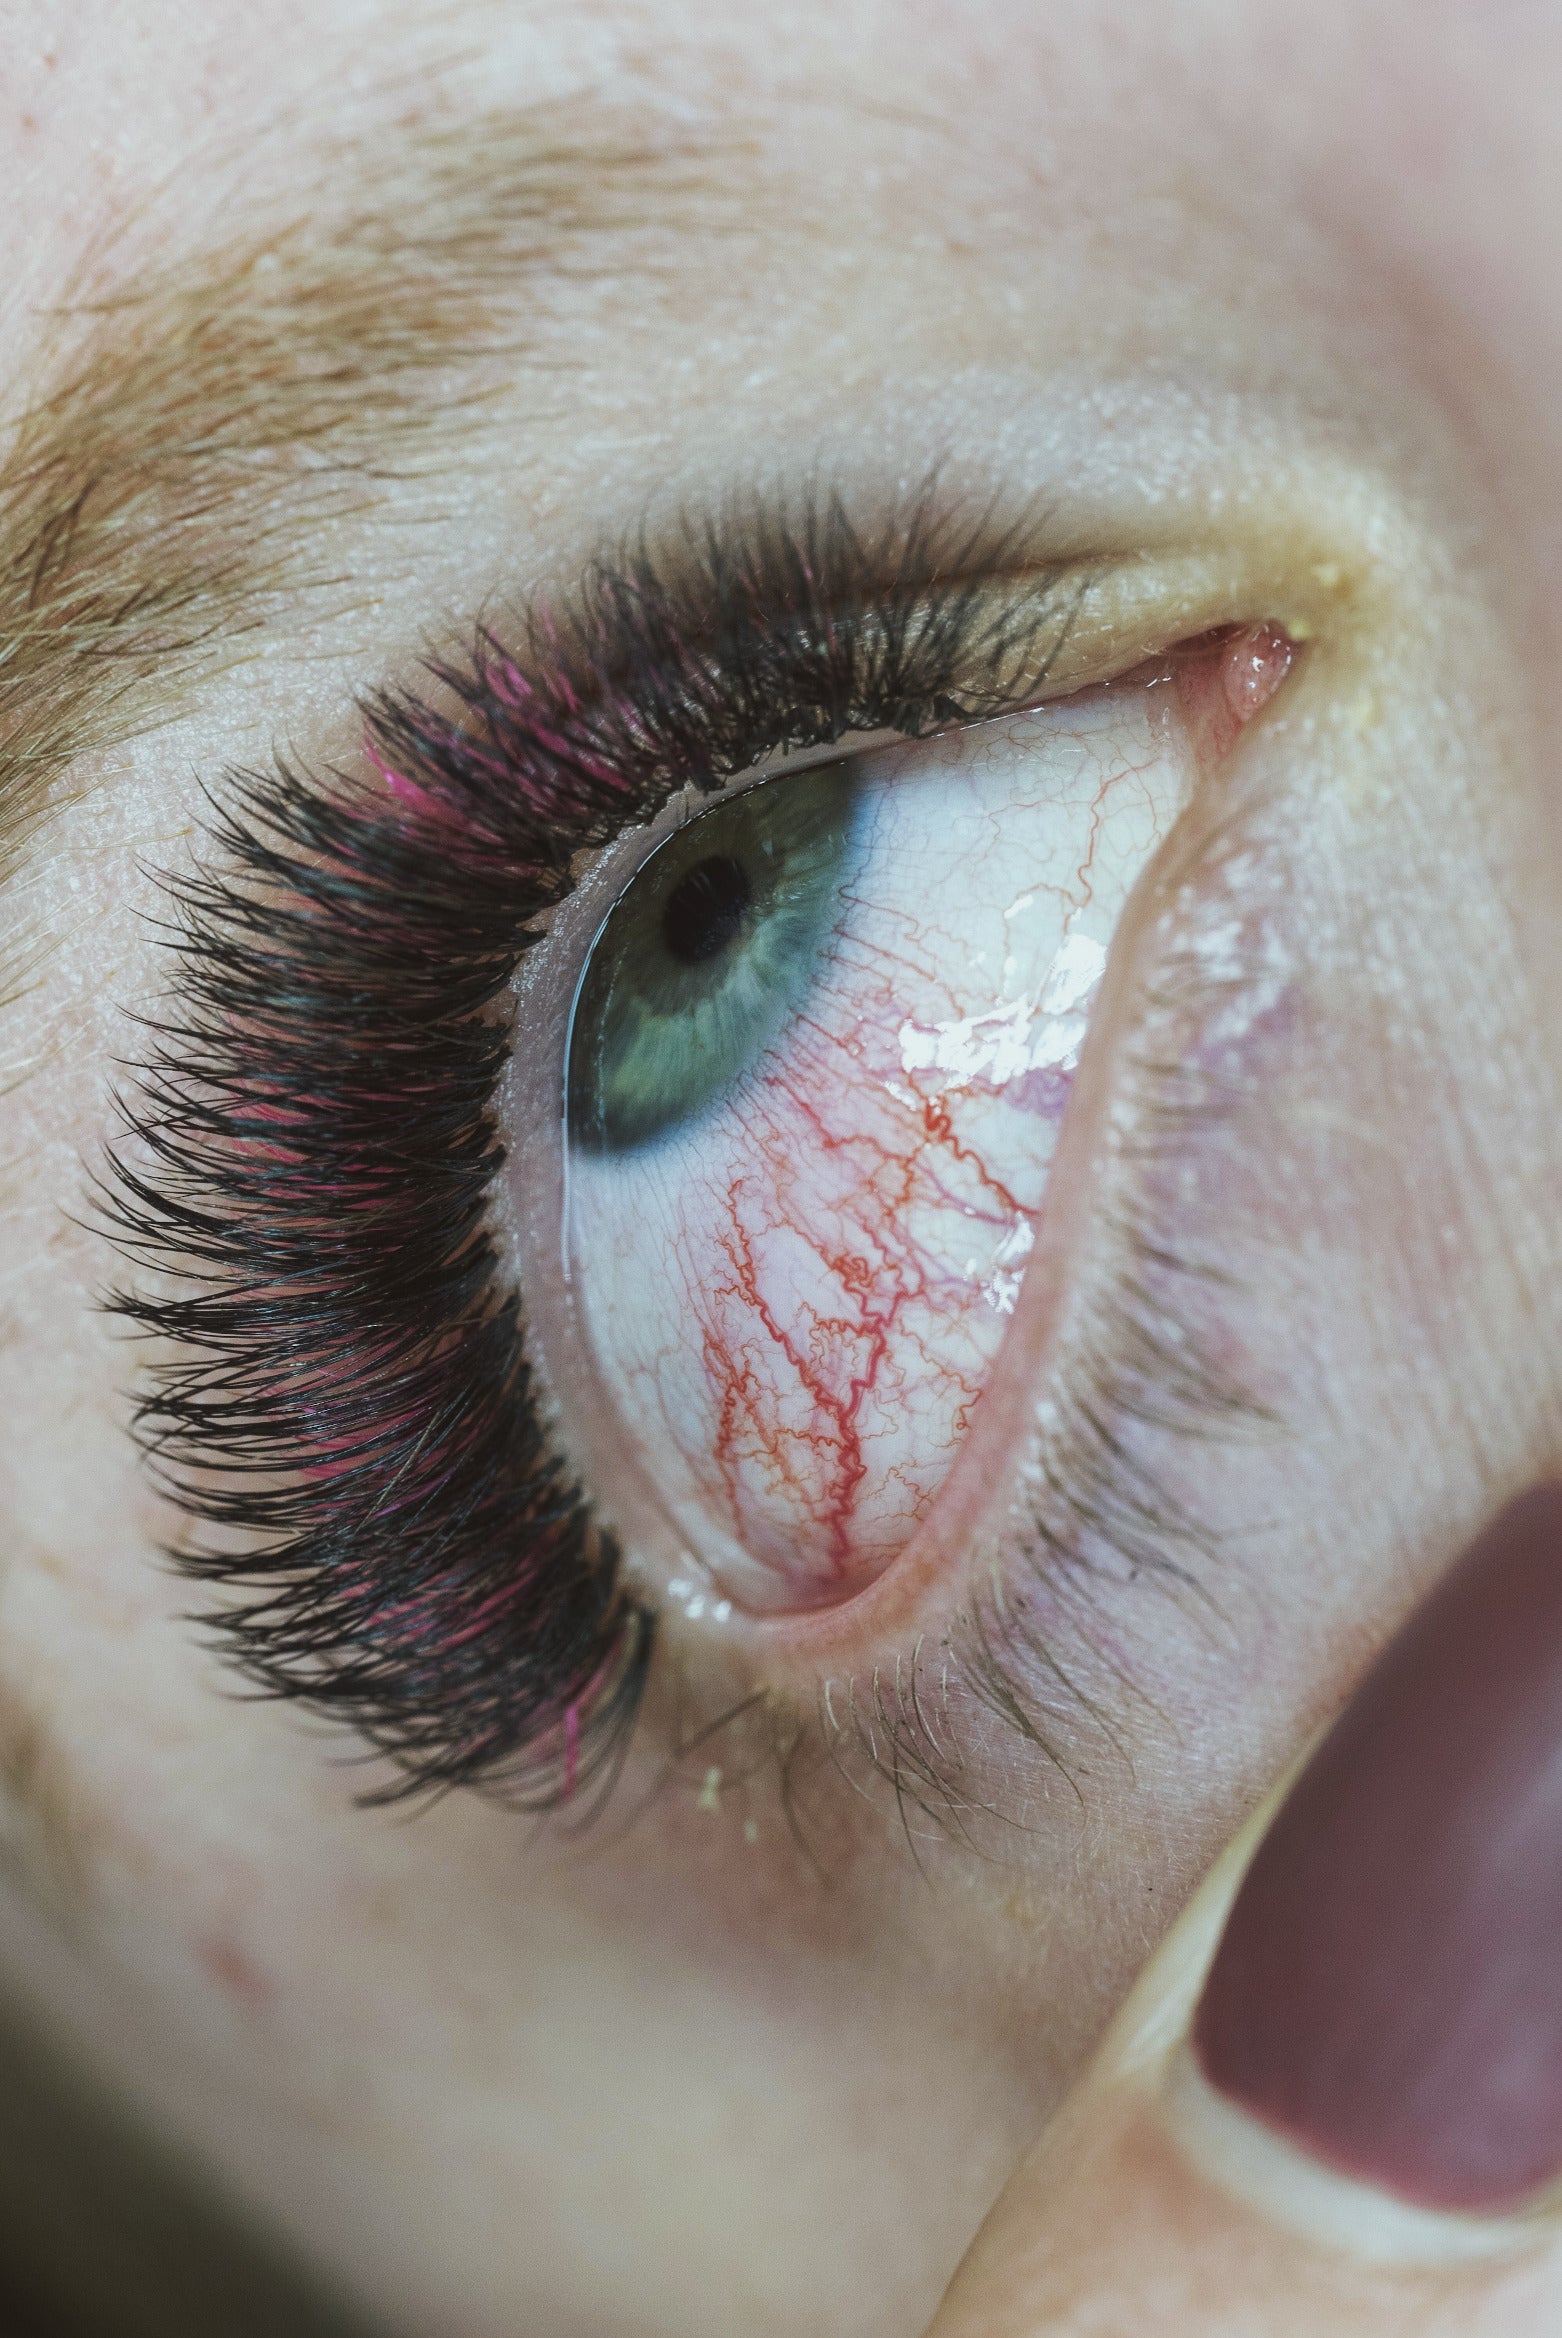 Chemical burn vs. pad irritation photo of a red eye.